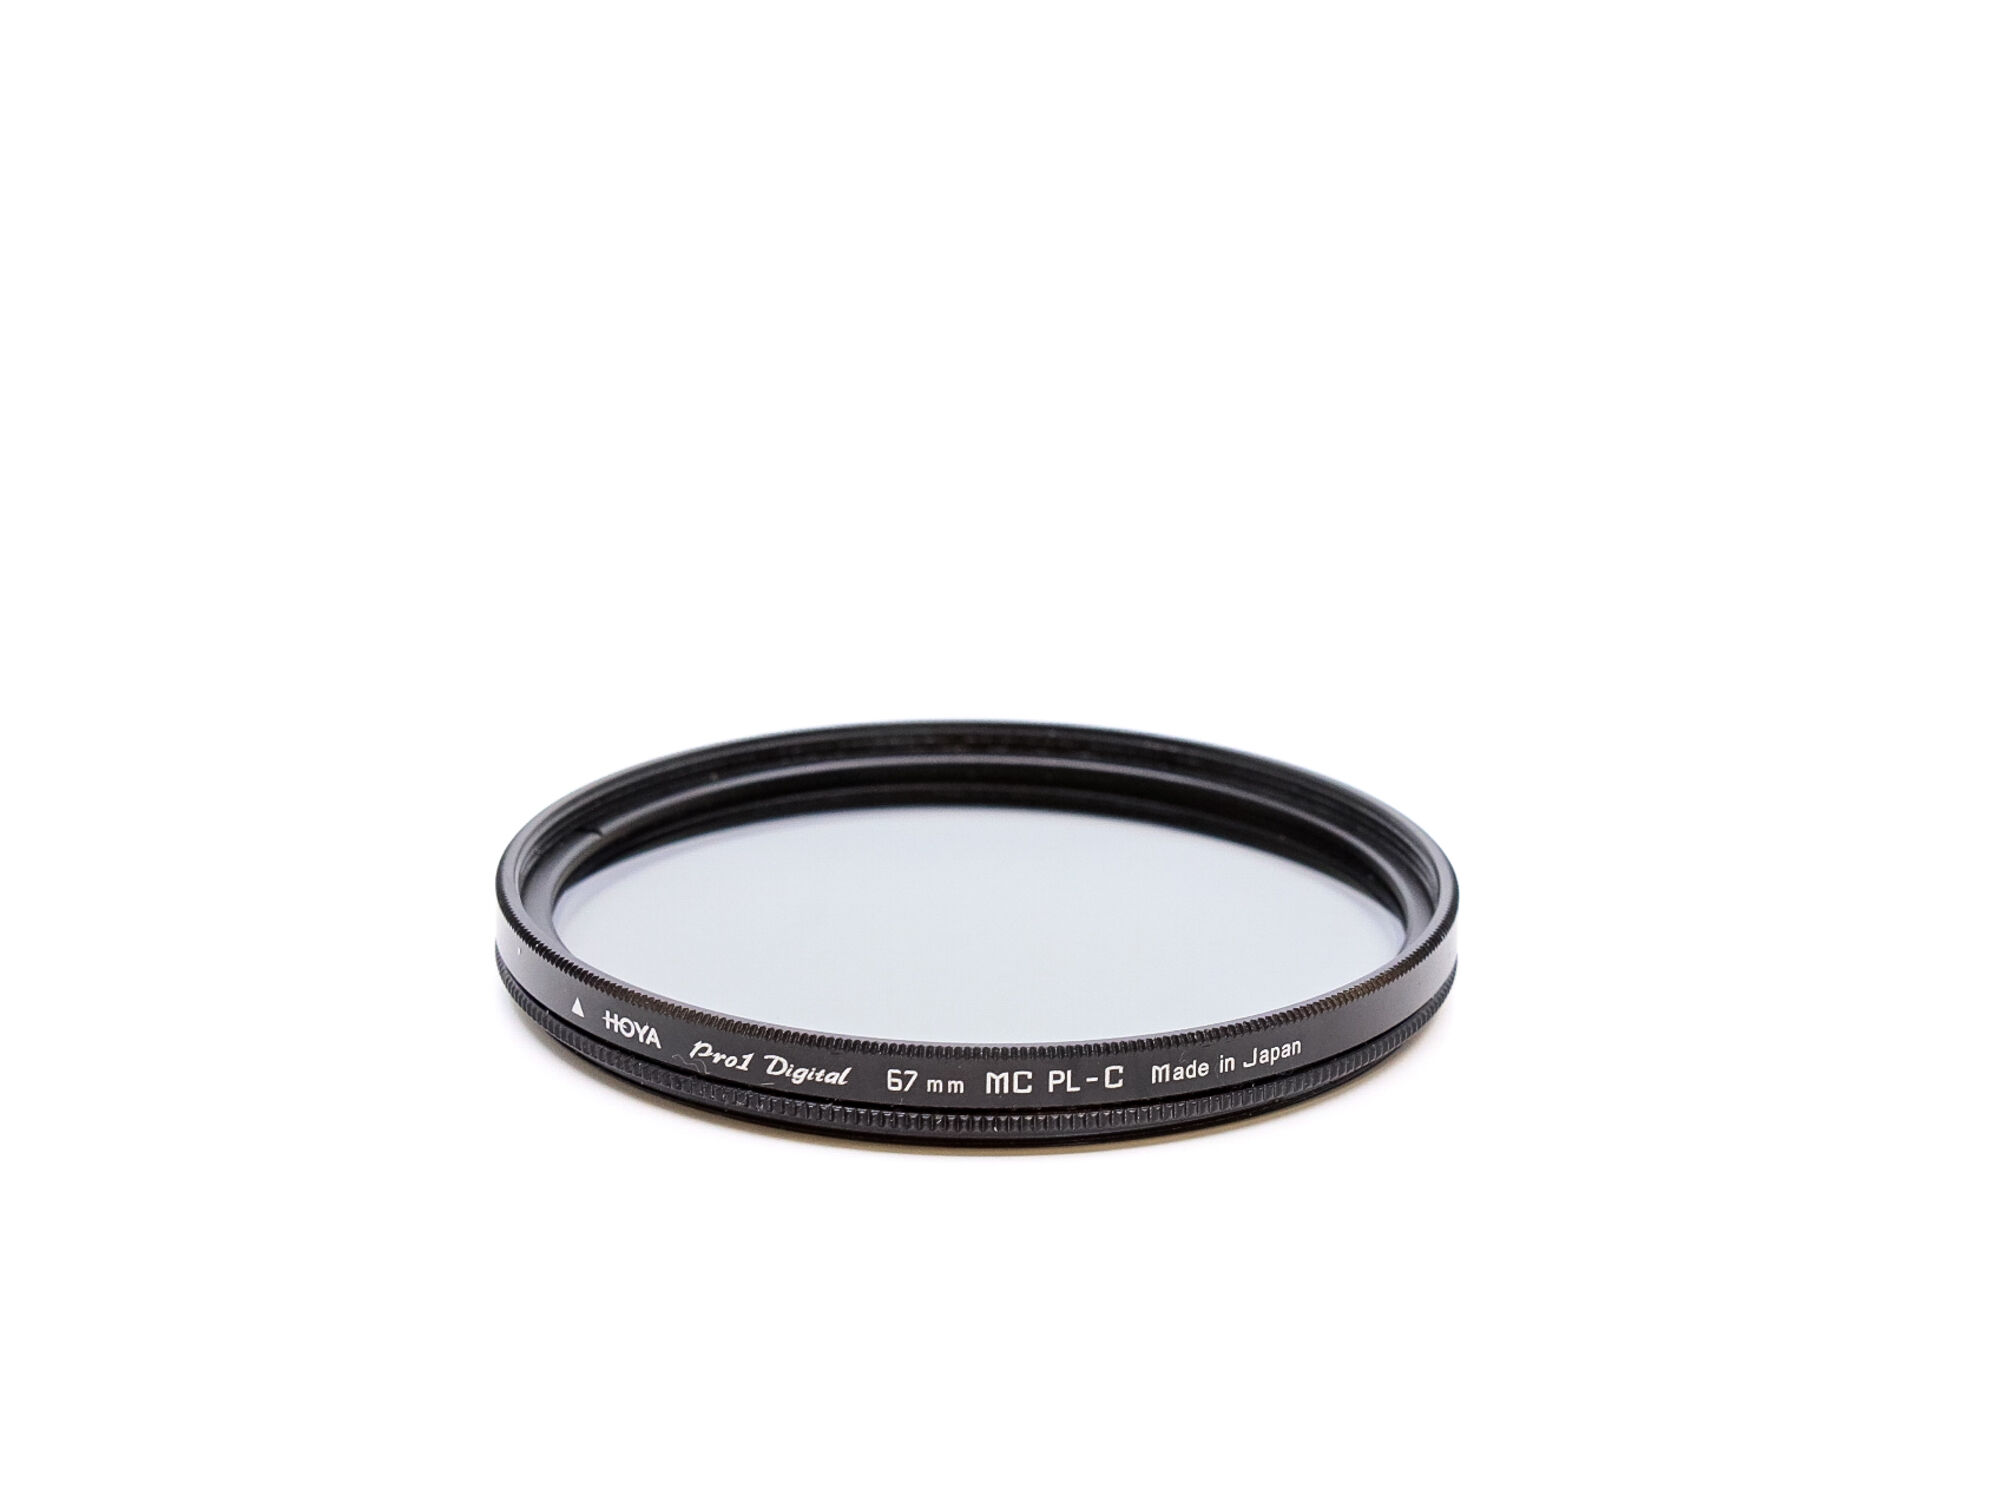 Hoya 67mm Pro 1 Digital Circular Polariser Filter (Condition: Like New)